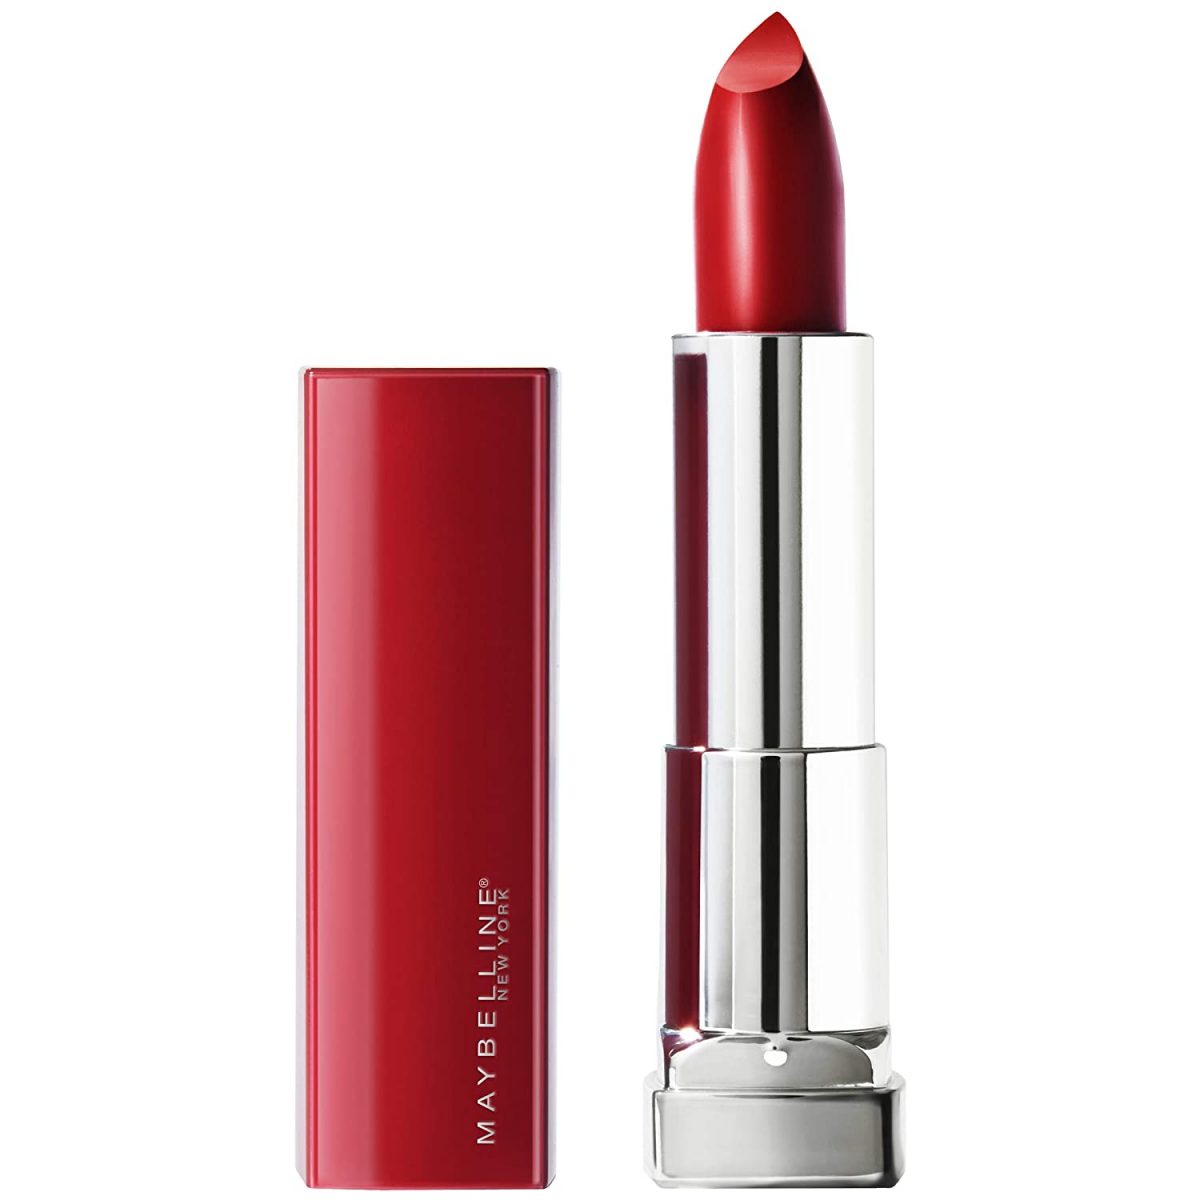 5 Best Red Lipsticks for Dark Skin